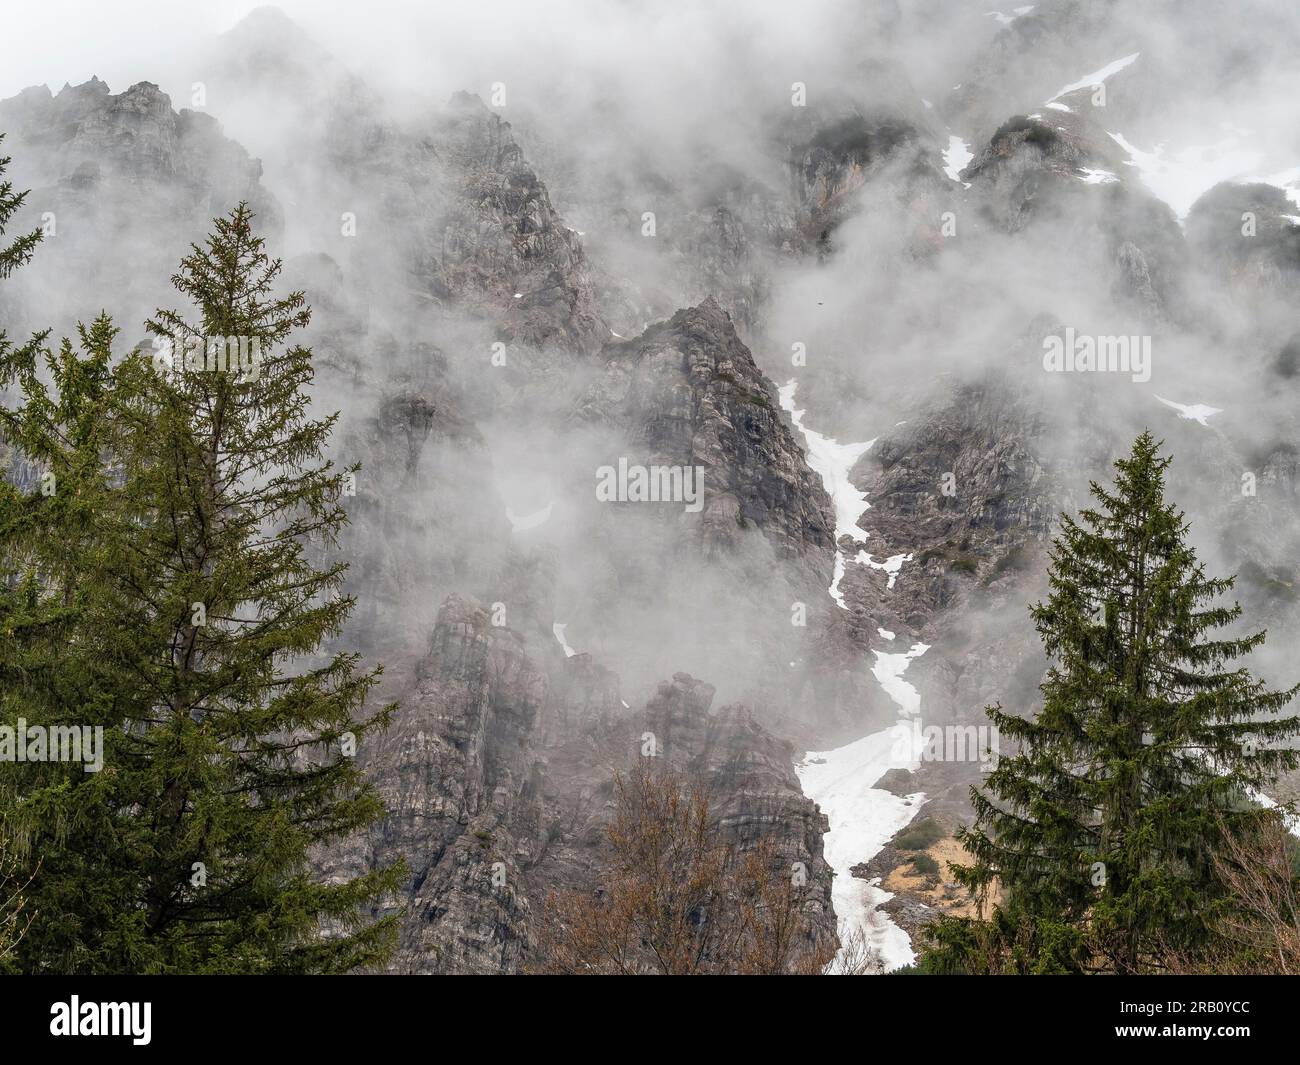 Vista sulle montagne Kaiser, una catena montuosa delle Alpi calcaree settentrionali nelle Alpi orientali. Si trova in Austria, in provincia di Tirolo, tra Kufstein e St Johann in Tirolo. Foto Stock